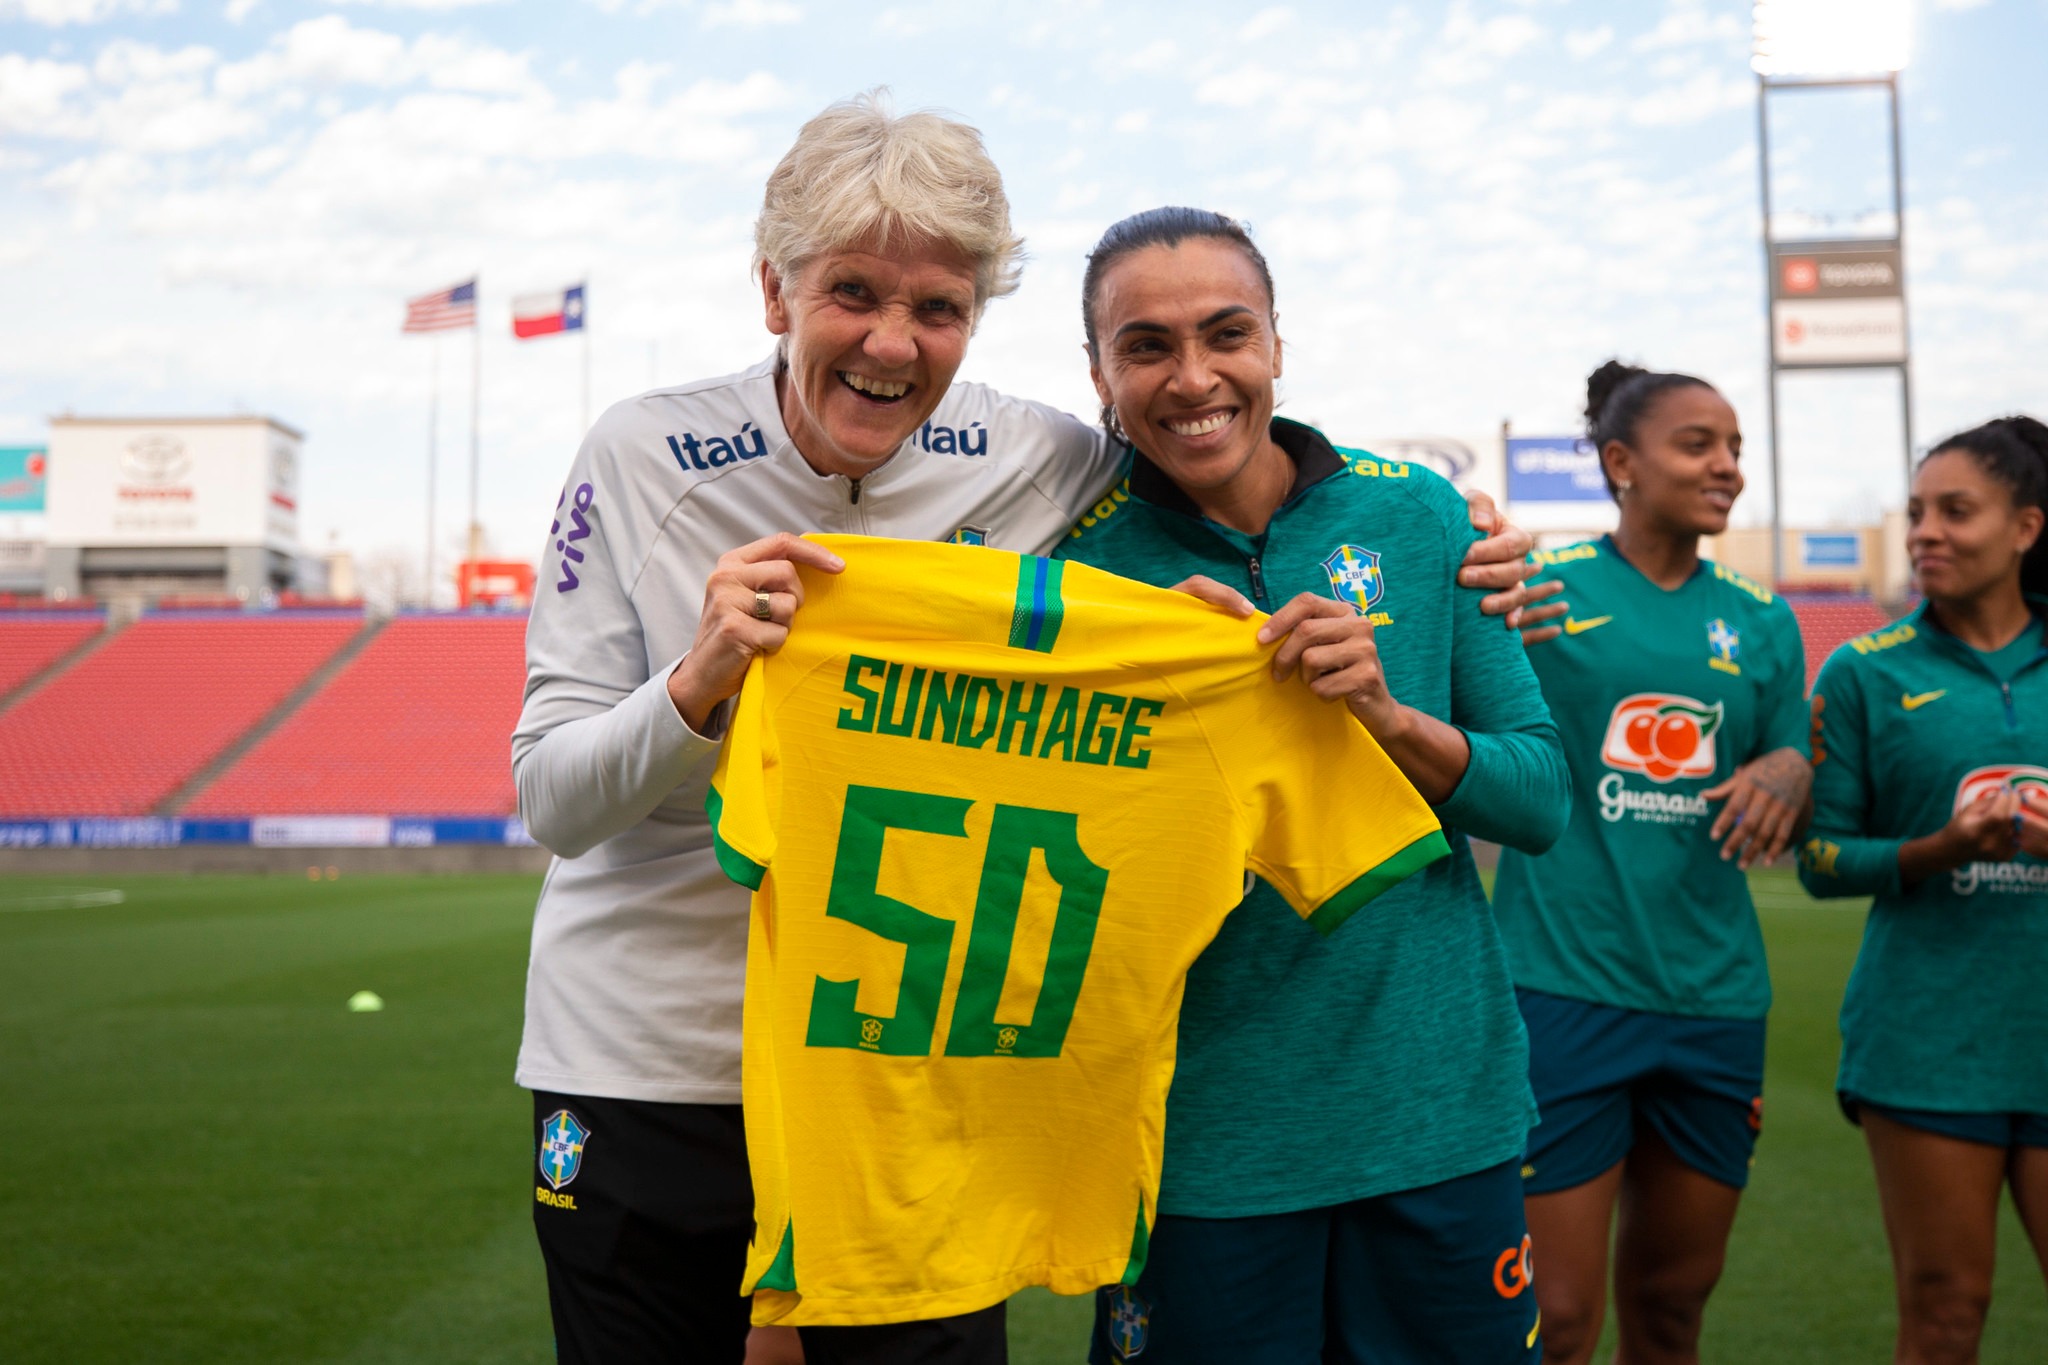 Chegou a hora de o Brasil vencer a França, diz Pia Sundhage